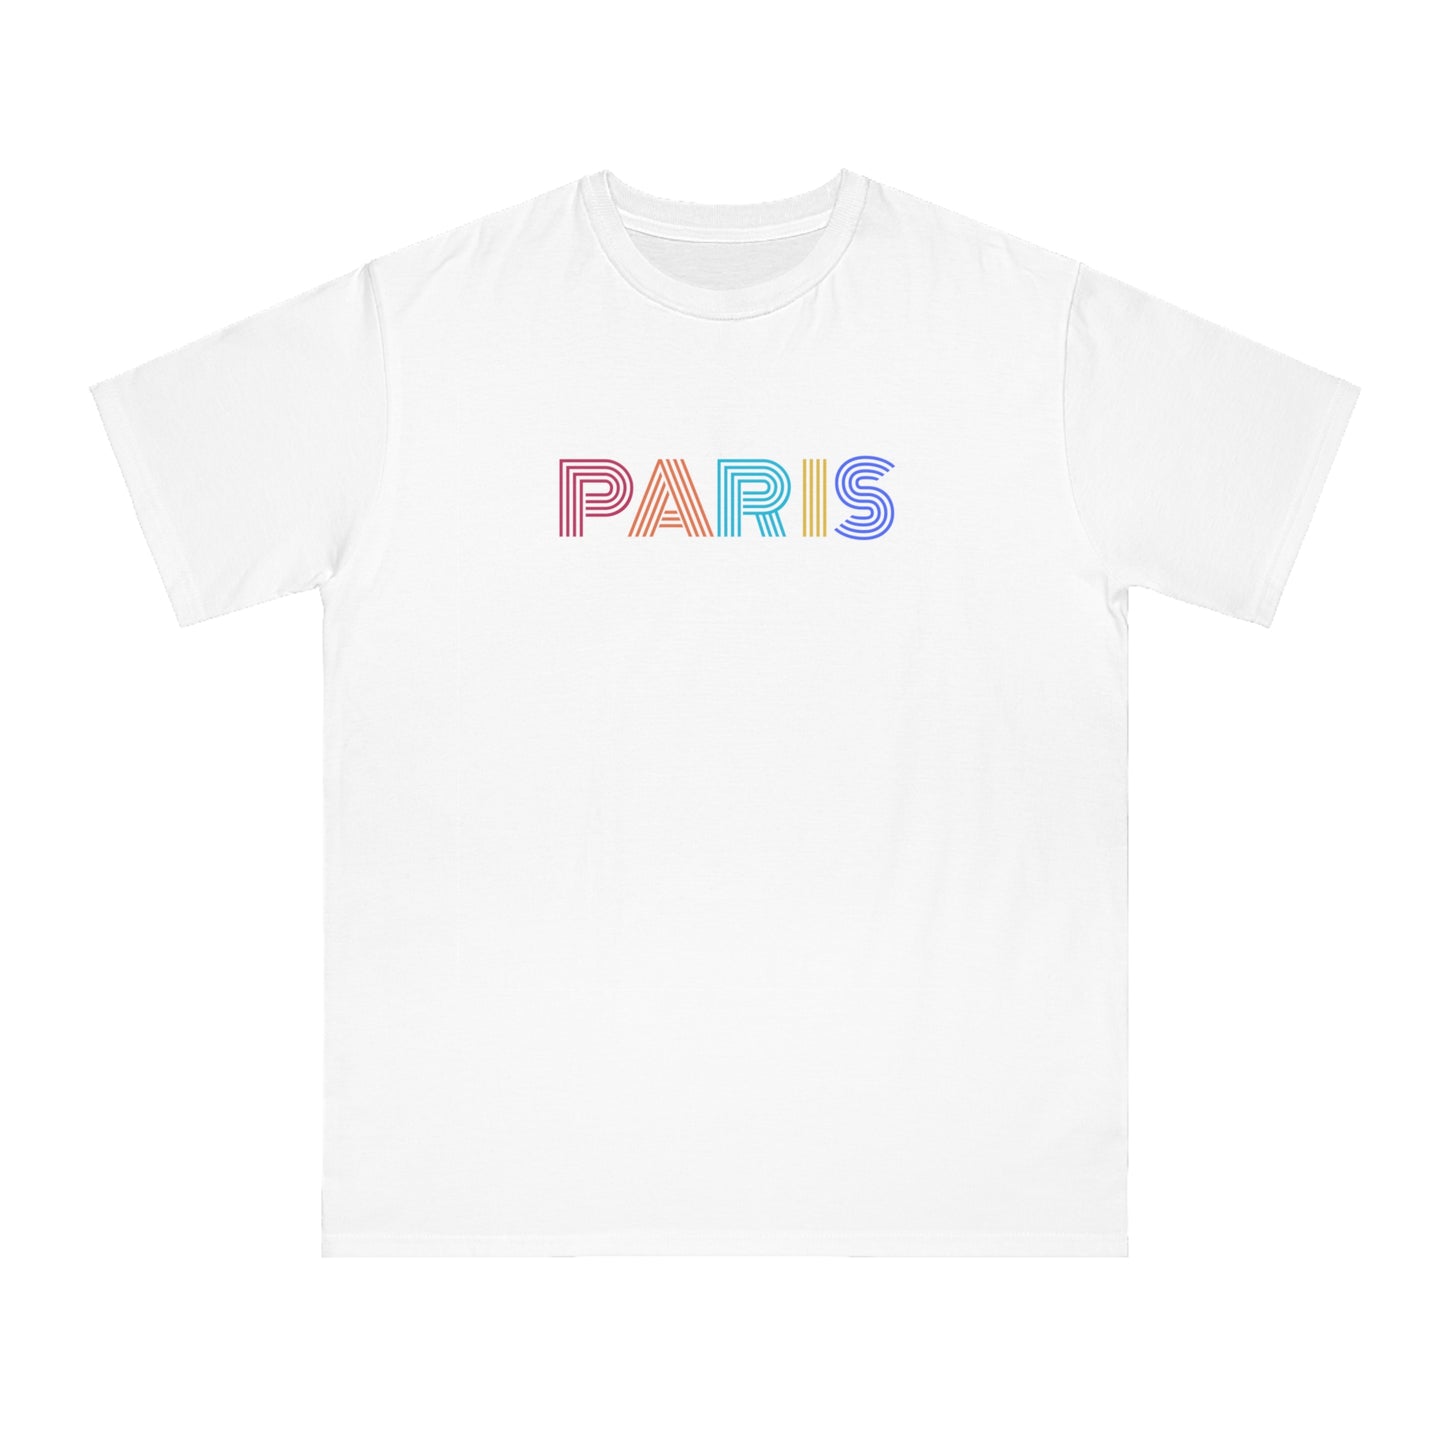 PARIS Unisex Classic T-Shirt